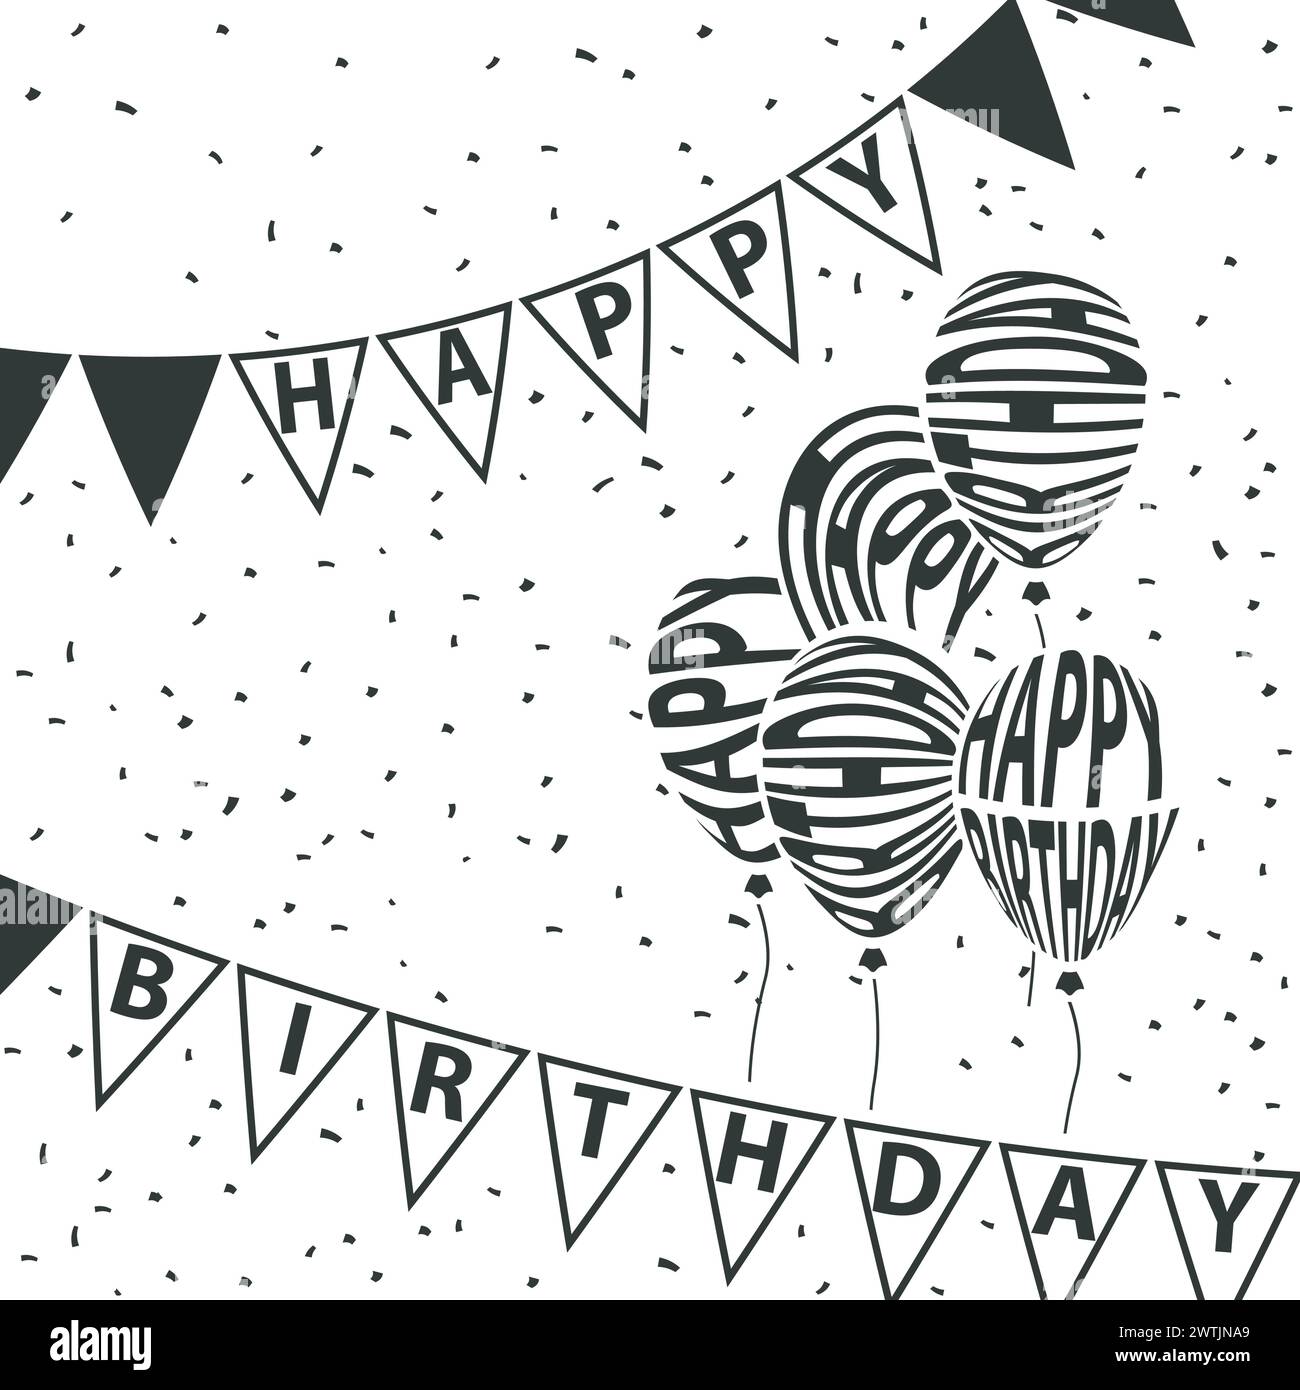 Happy Birthday Party mit Dreieck-Fahnen und Konfetti-Hintergrund, Vektor-Illustration Stock Vektor